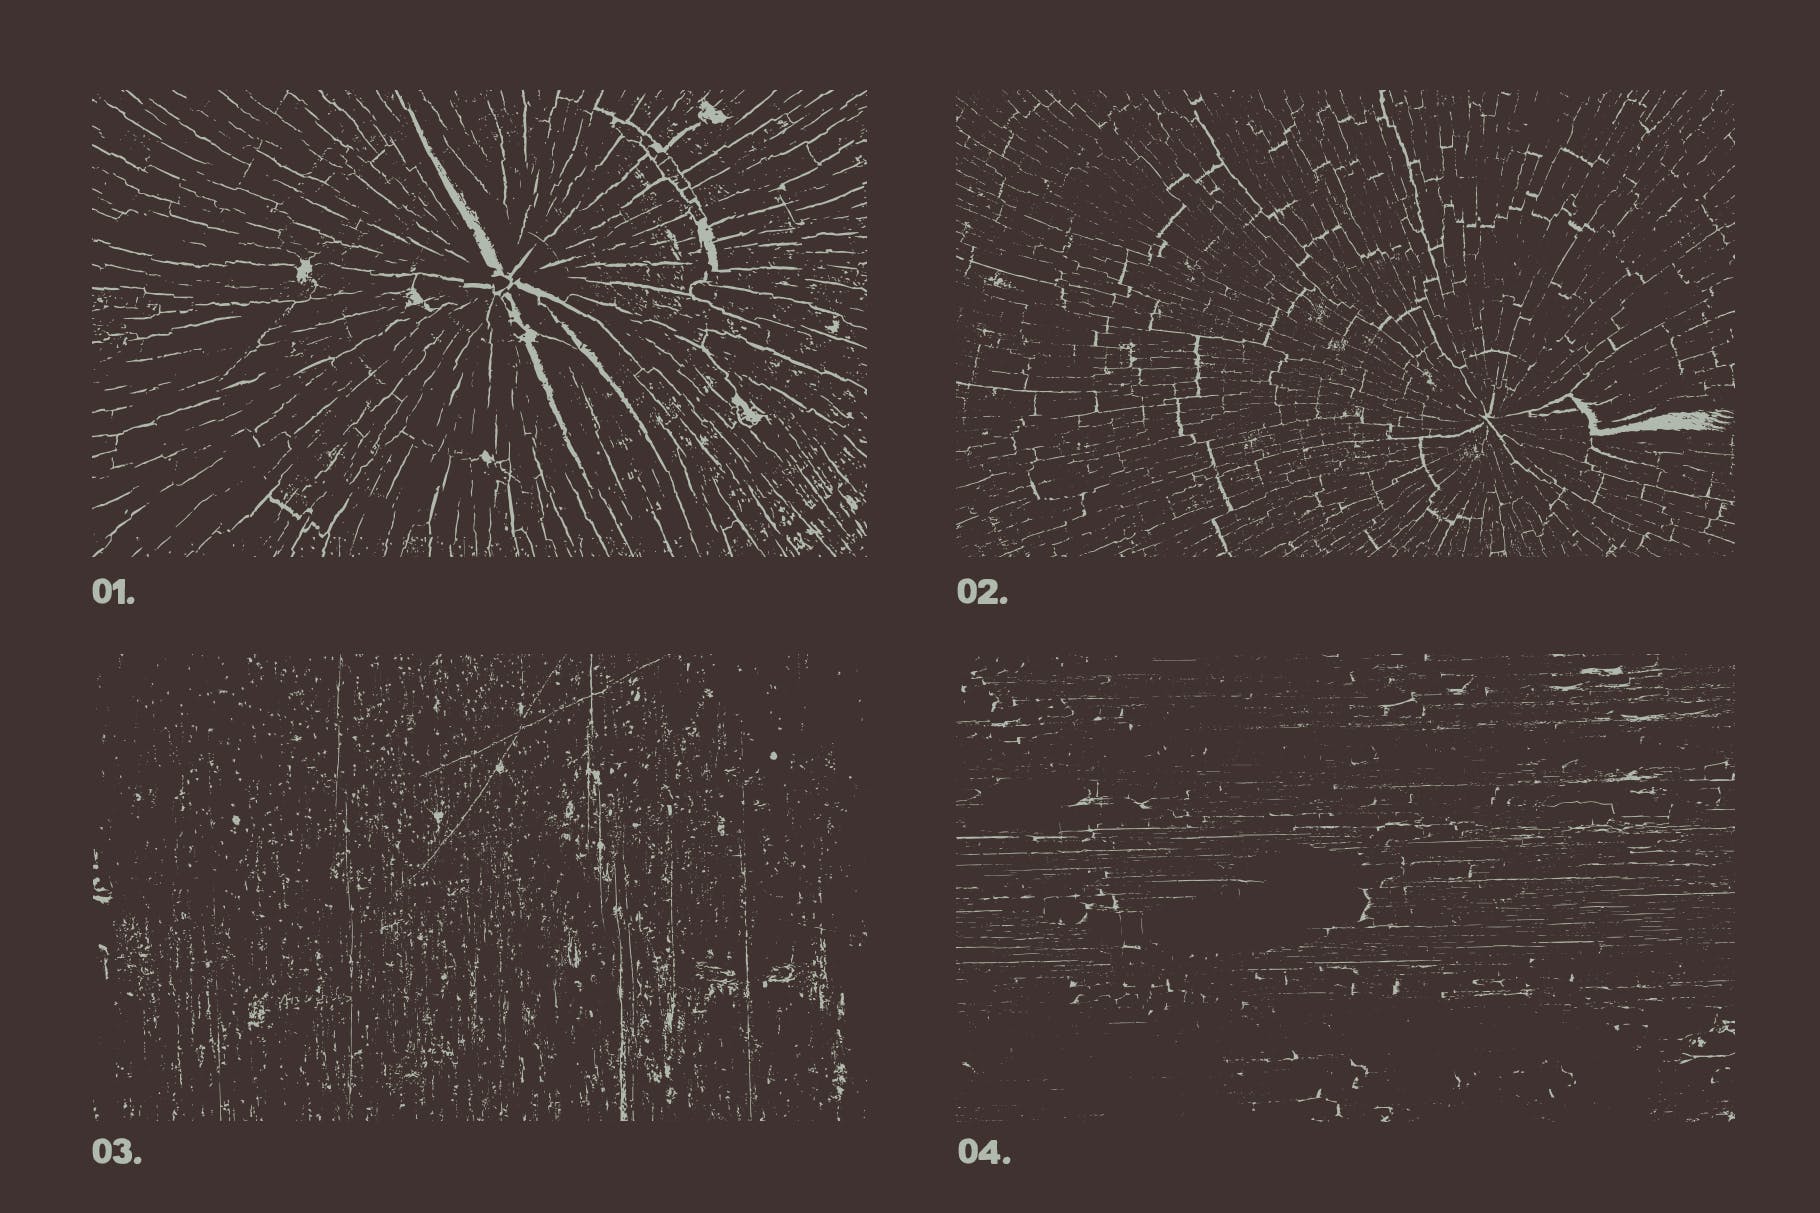 12个实木木纹矢量纹理背景素材 Vector Grunge Wood Textures x12插图(1)